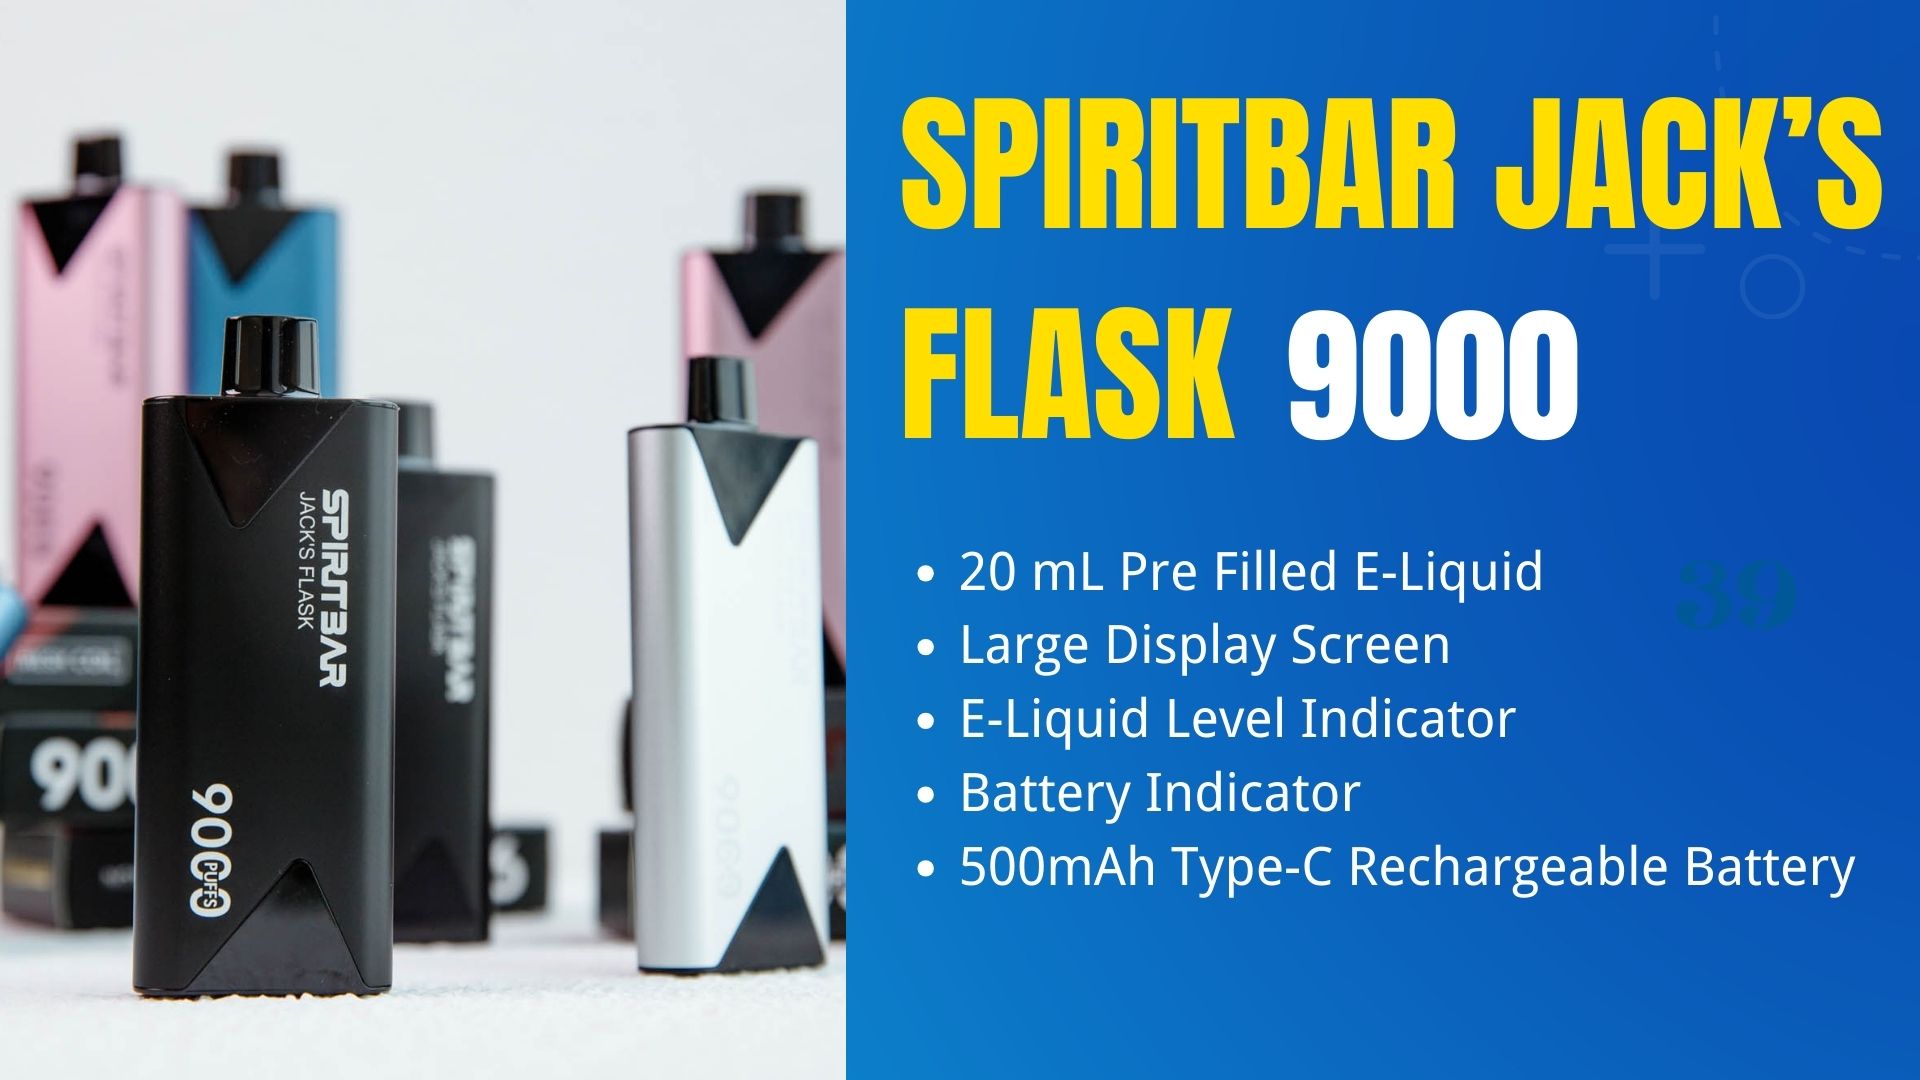 SPIRITBAR Jack’s Flask 9000 Puffs